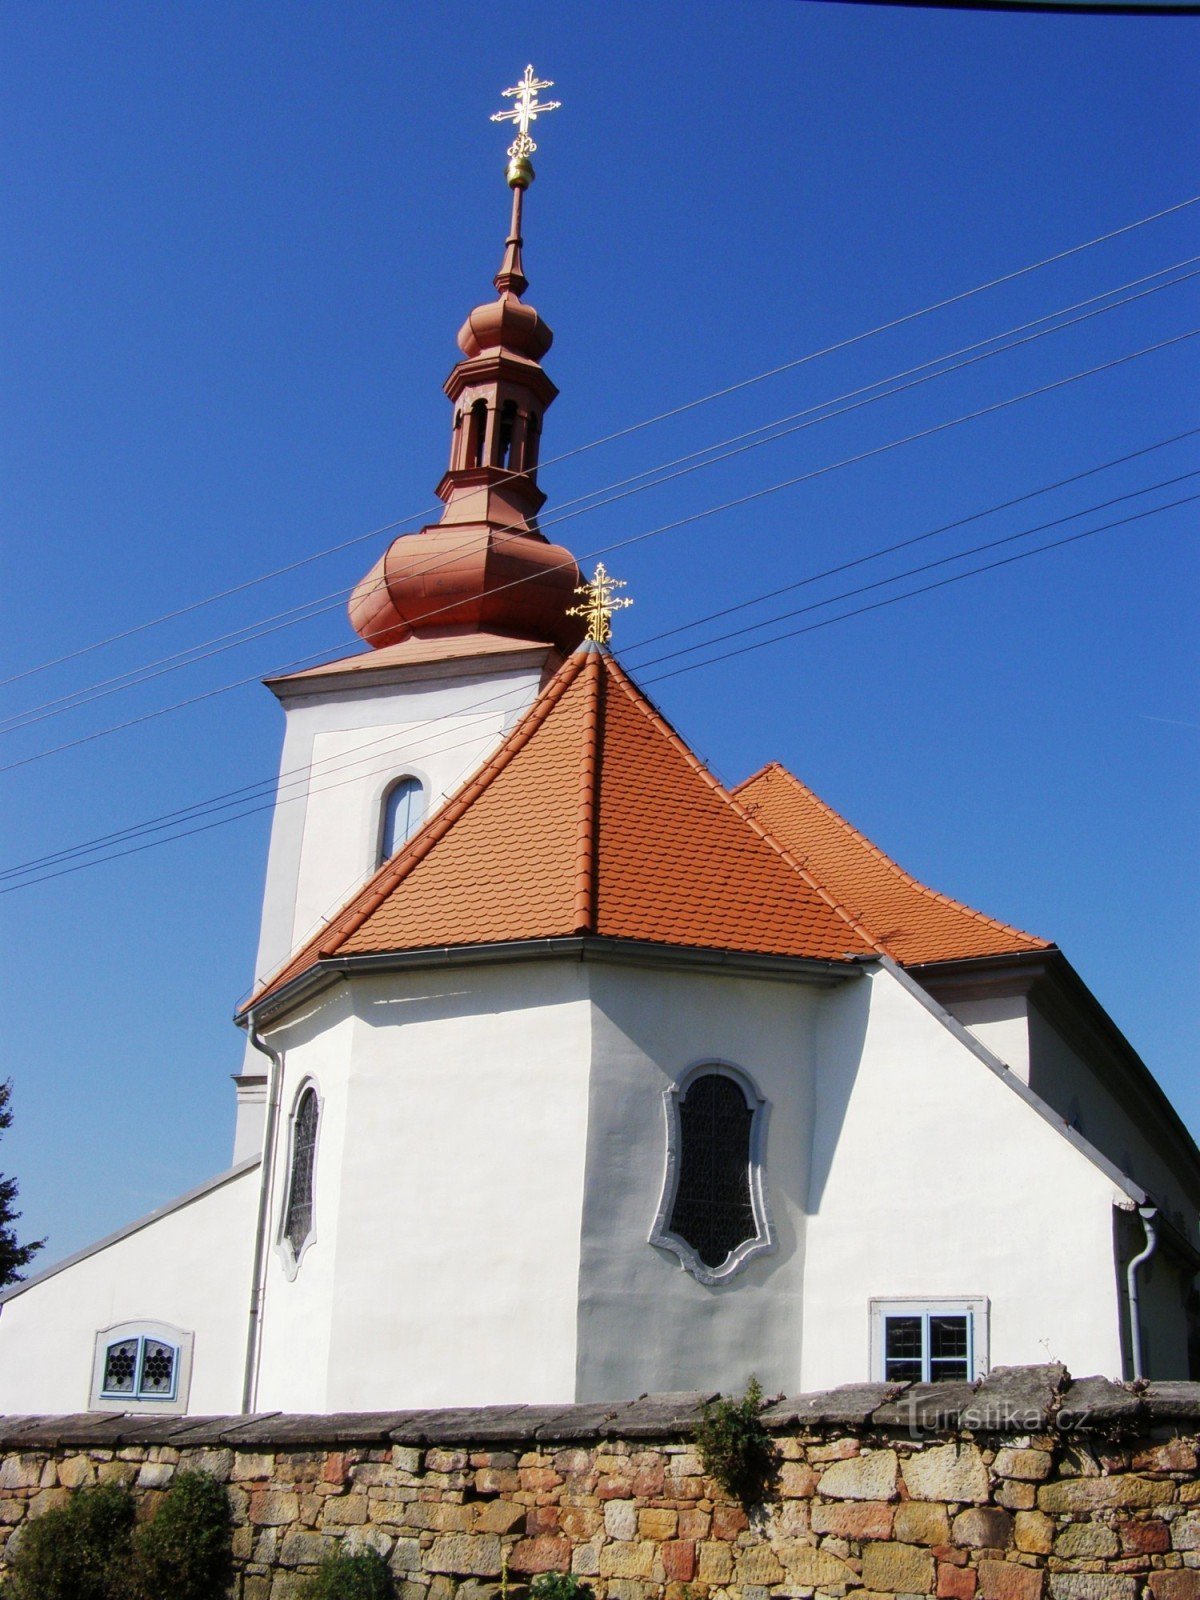 Chodovice - Pyhän Nikolauksen kirkko. Bartolomeus